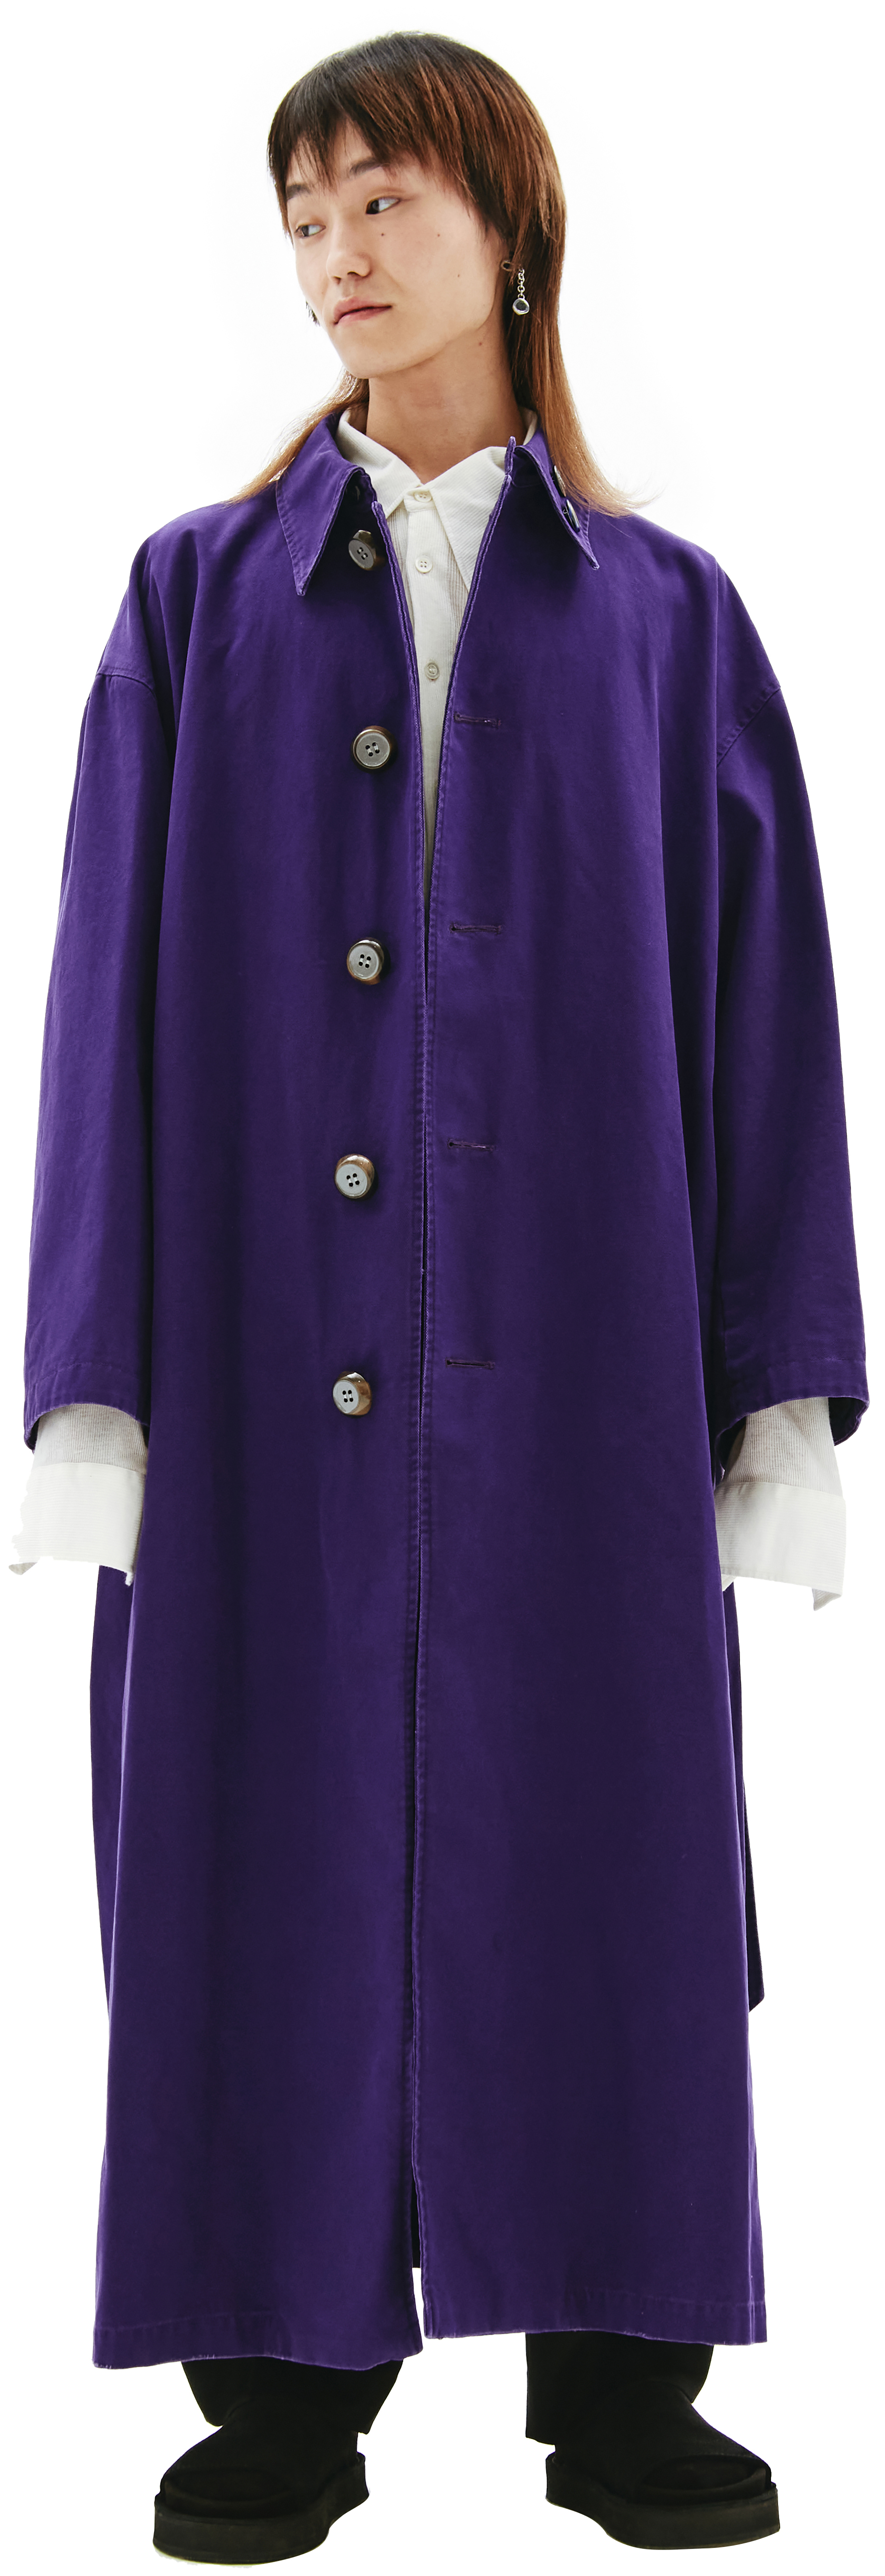 Buy Raf Simons men purple oversize coat for $3,985 online on SV77 